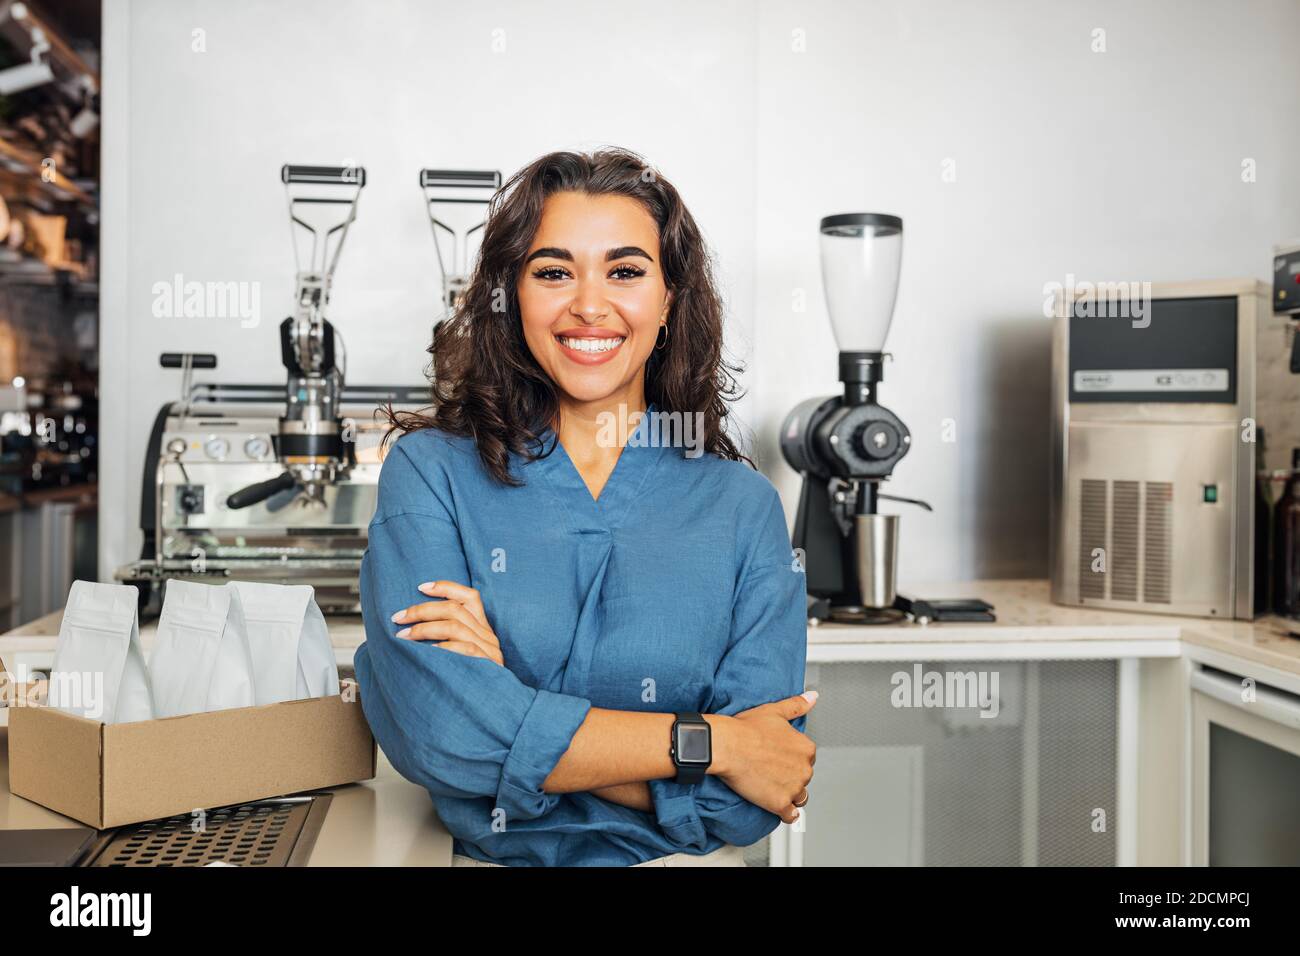 Lächelnder Besitzer des Cafés, der die Kamera mit gekreuzten Armen ansah. Junge Unternehmerin, die in einem Café am Tisch steht. Stockfoto